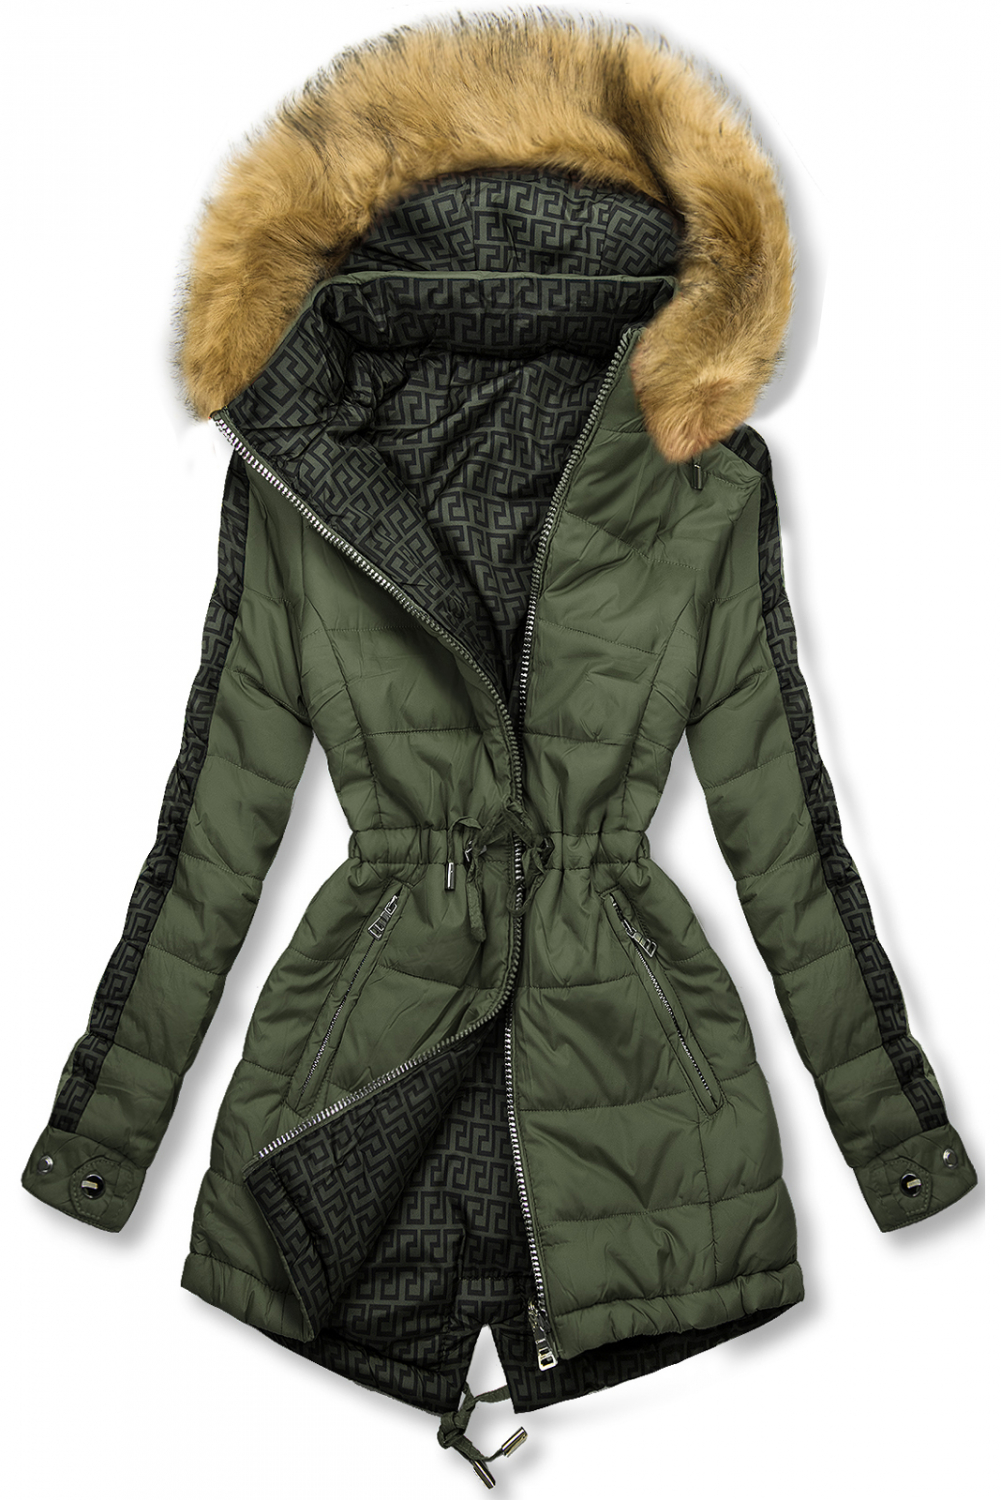 Khaki/zelená obojstranná zimná parka.
- obojstranná
- zapínanie na zips 
- v páse sťahovanie 
- s odopínateľnou kapucňou a kožušinou
- podšívka s výplňou
- dve predné vrecká
- materiál: 100% nylon, podšívka: 100% polyester
 